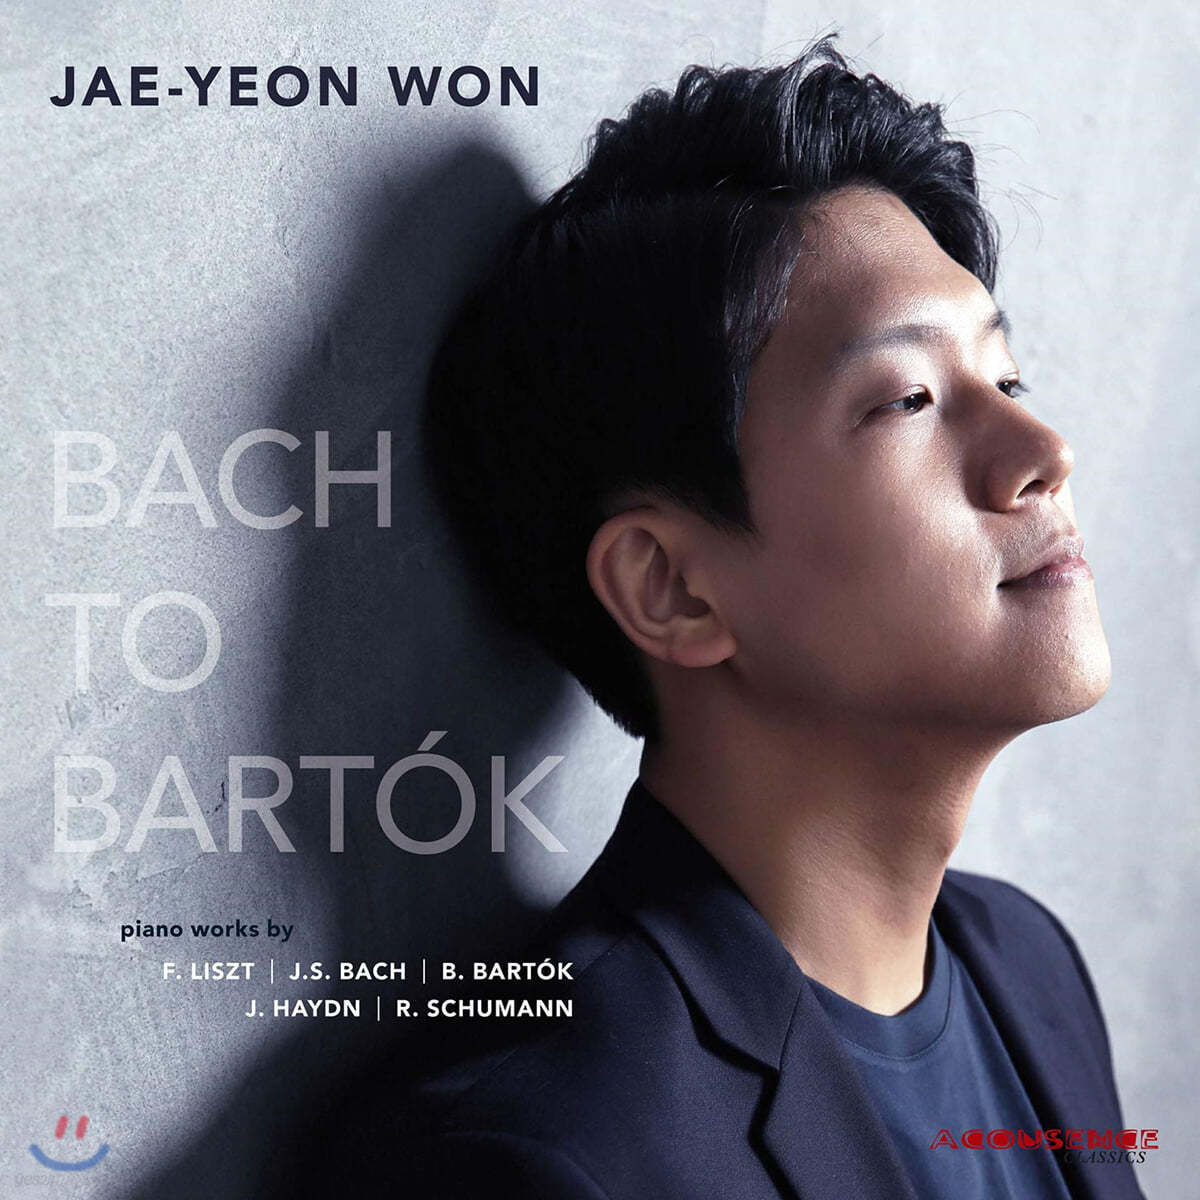 원재연 - 피아노 독주집 (Bach to Bartok)